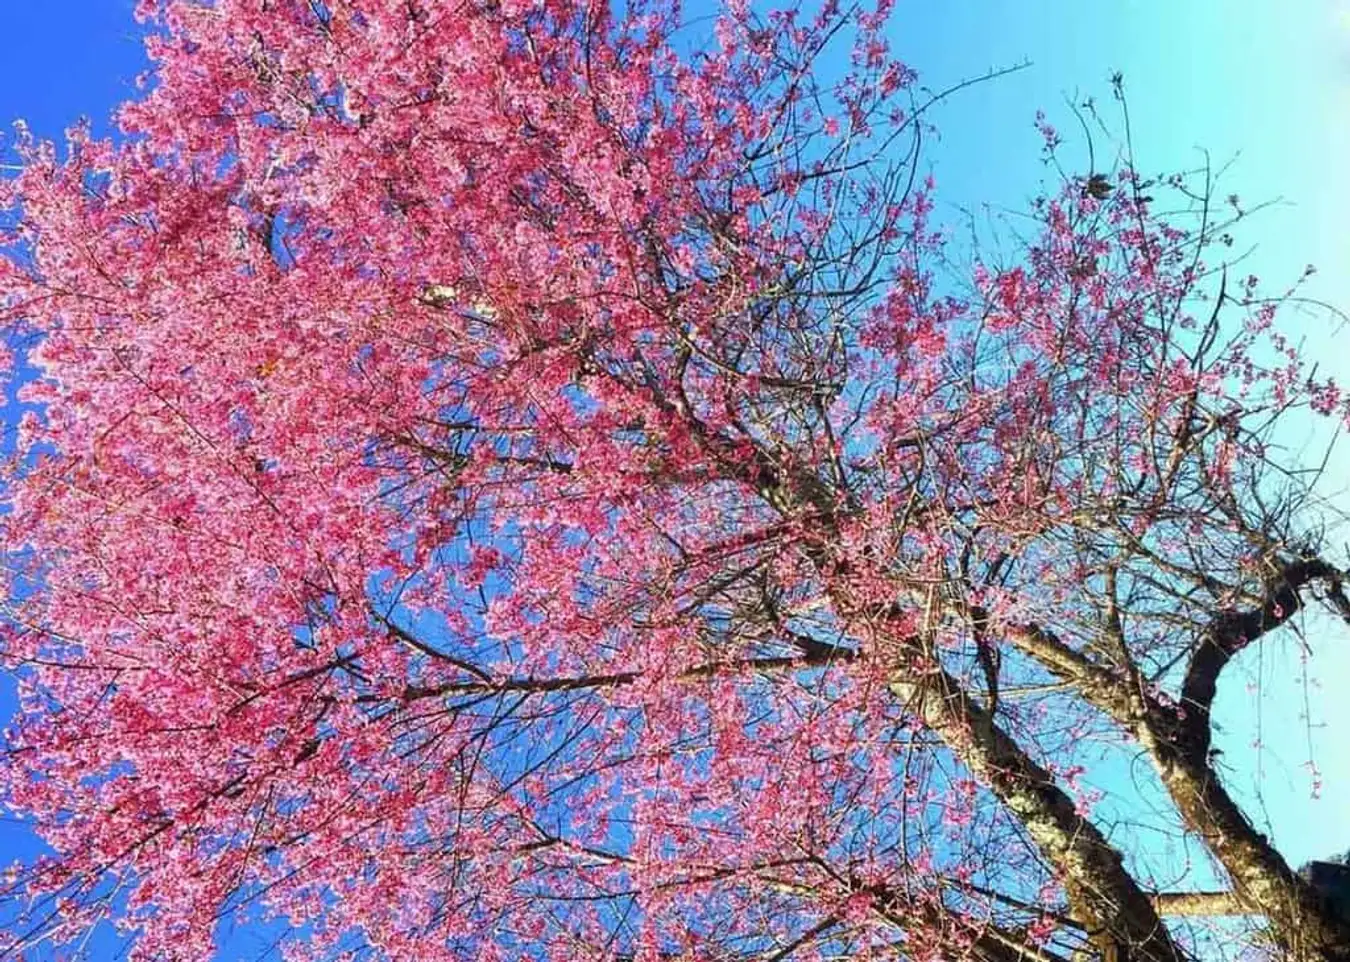 Đường Trần Hưng Đạo còn được gọi“Con đường hoa mai anh đào”, “Con đường hồng” của Đà Lạt. Đường Trần Hưng Đạo dài khoảng 500m, hai bên đường được trồng mai anh đào Đà Lạt. Khi hoa nở, cả con phố như được sơn một màu hồng rực rỡ - Ảnh: @momentography2017